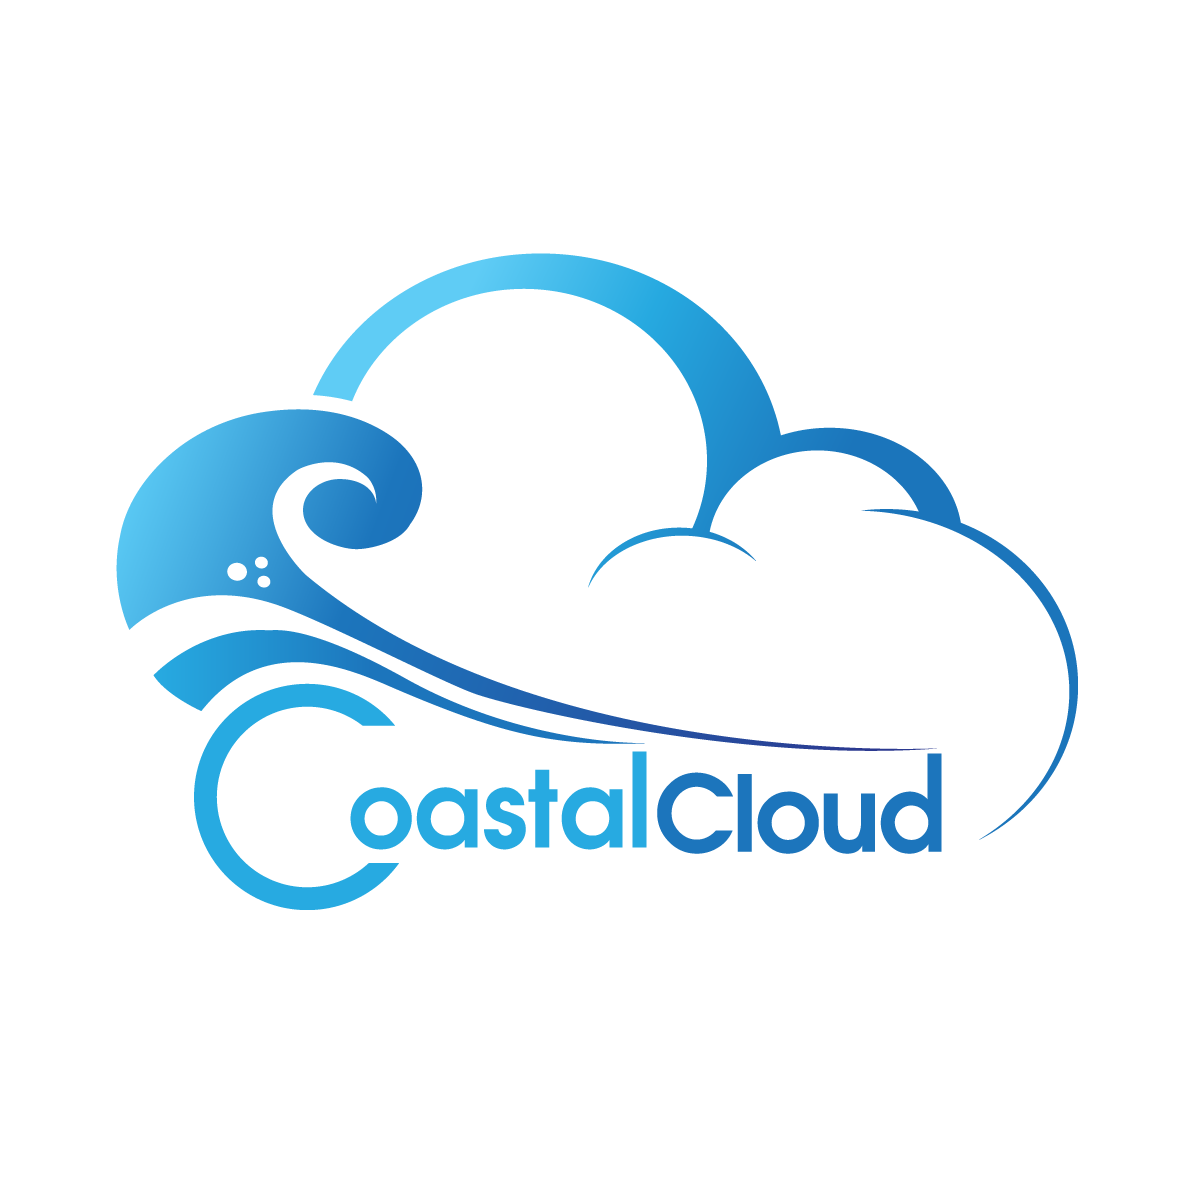 Coastal Cloud Ranks 